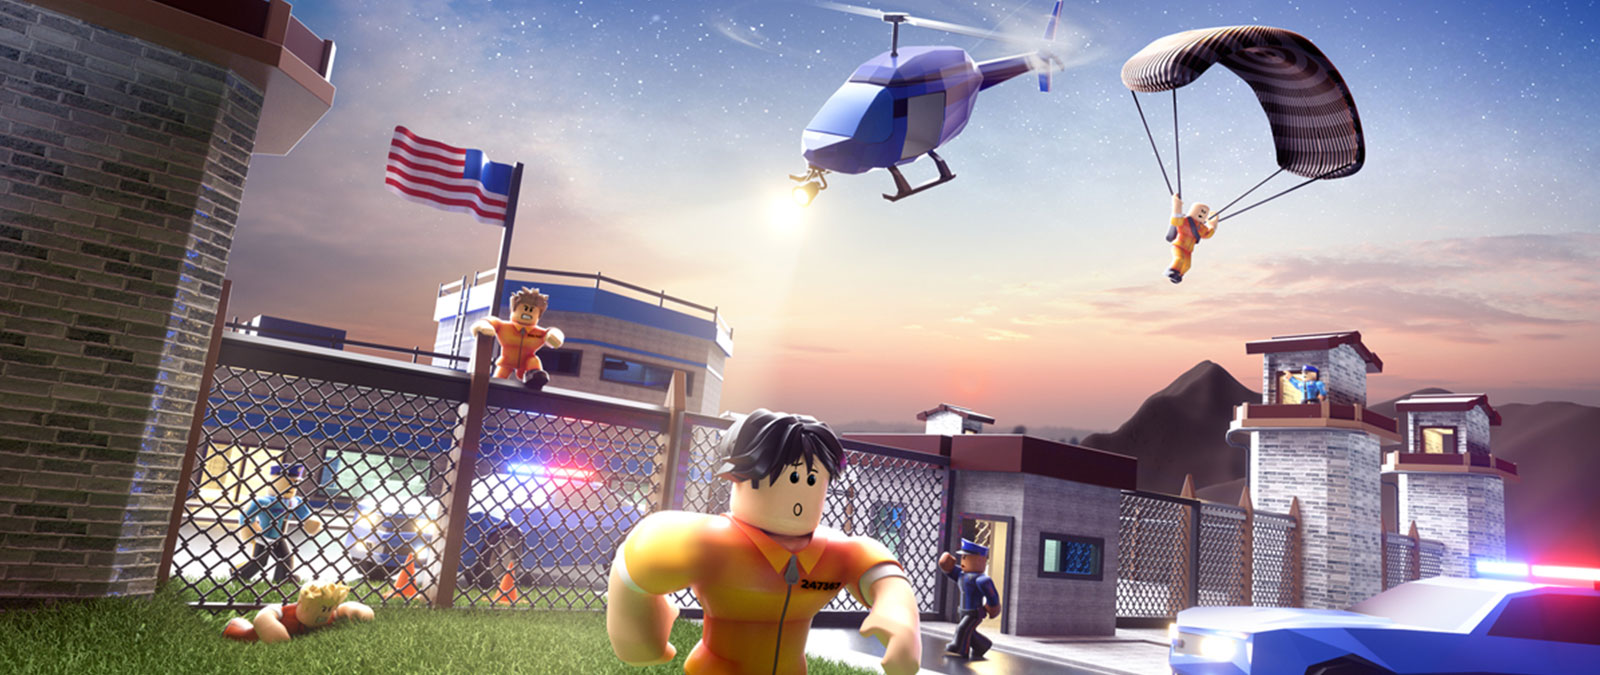 Roblox-karakterer rømmer fra fengselet mens politiet jager etter dem i Jailbreak-spillet